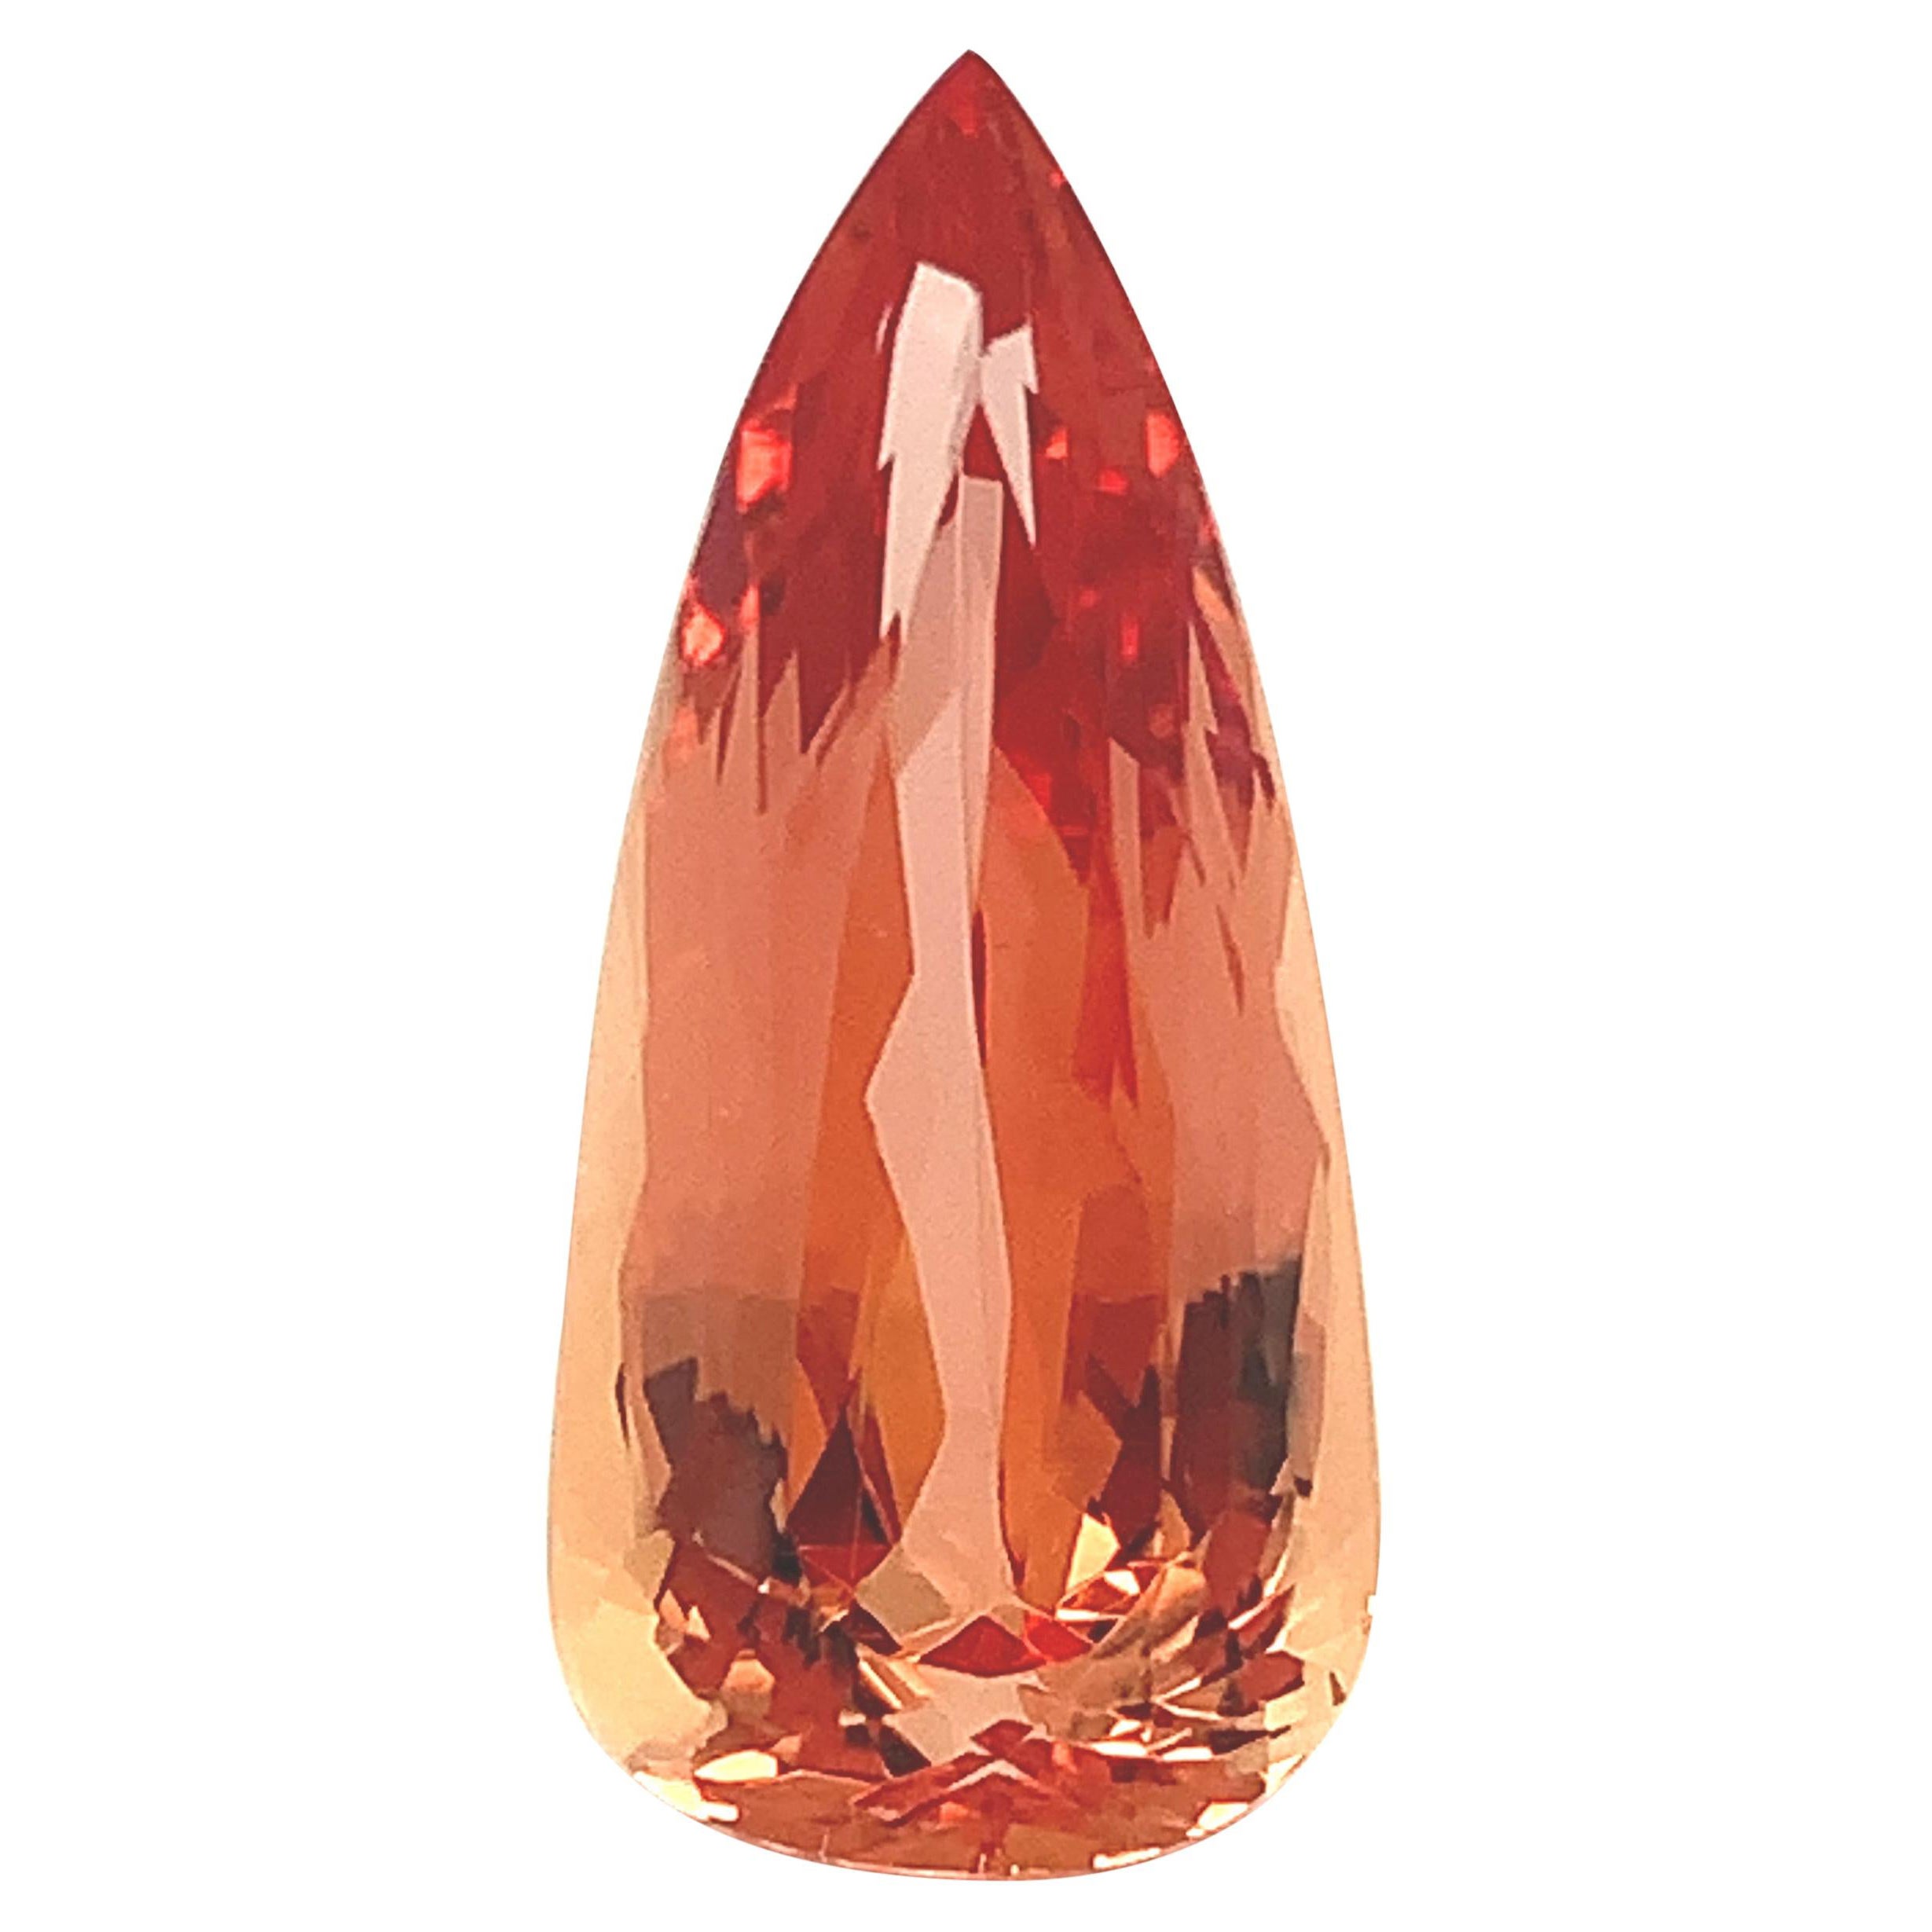 Topaze impériale orange 15,90 carats, pierre précieuse non sertie, certifiée GIA